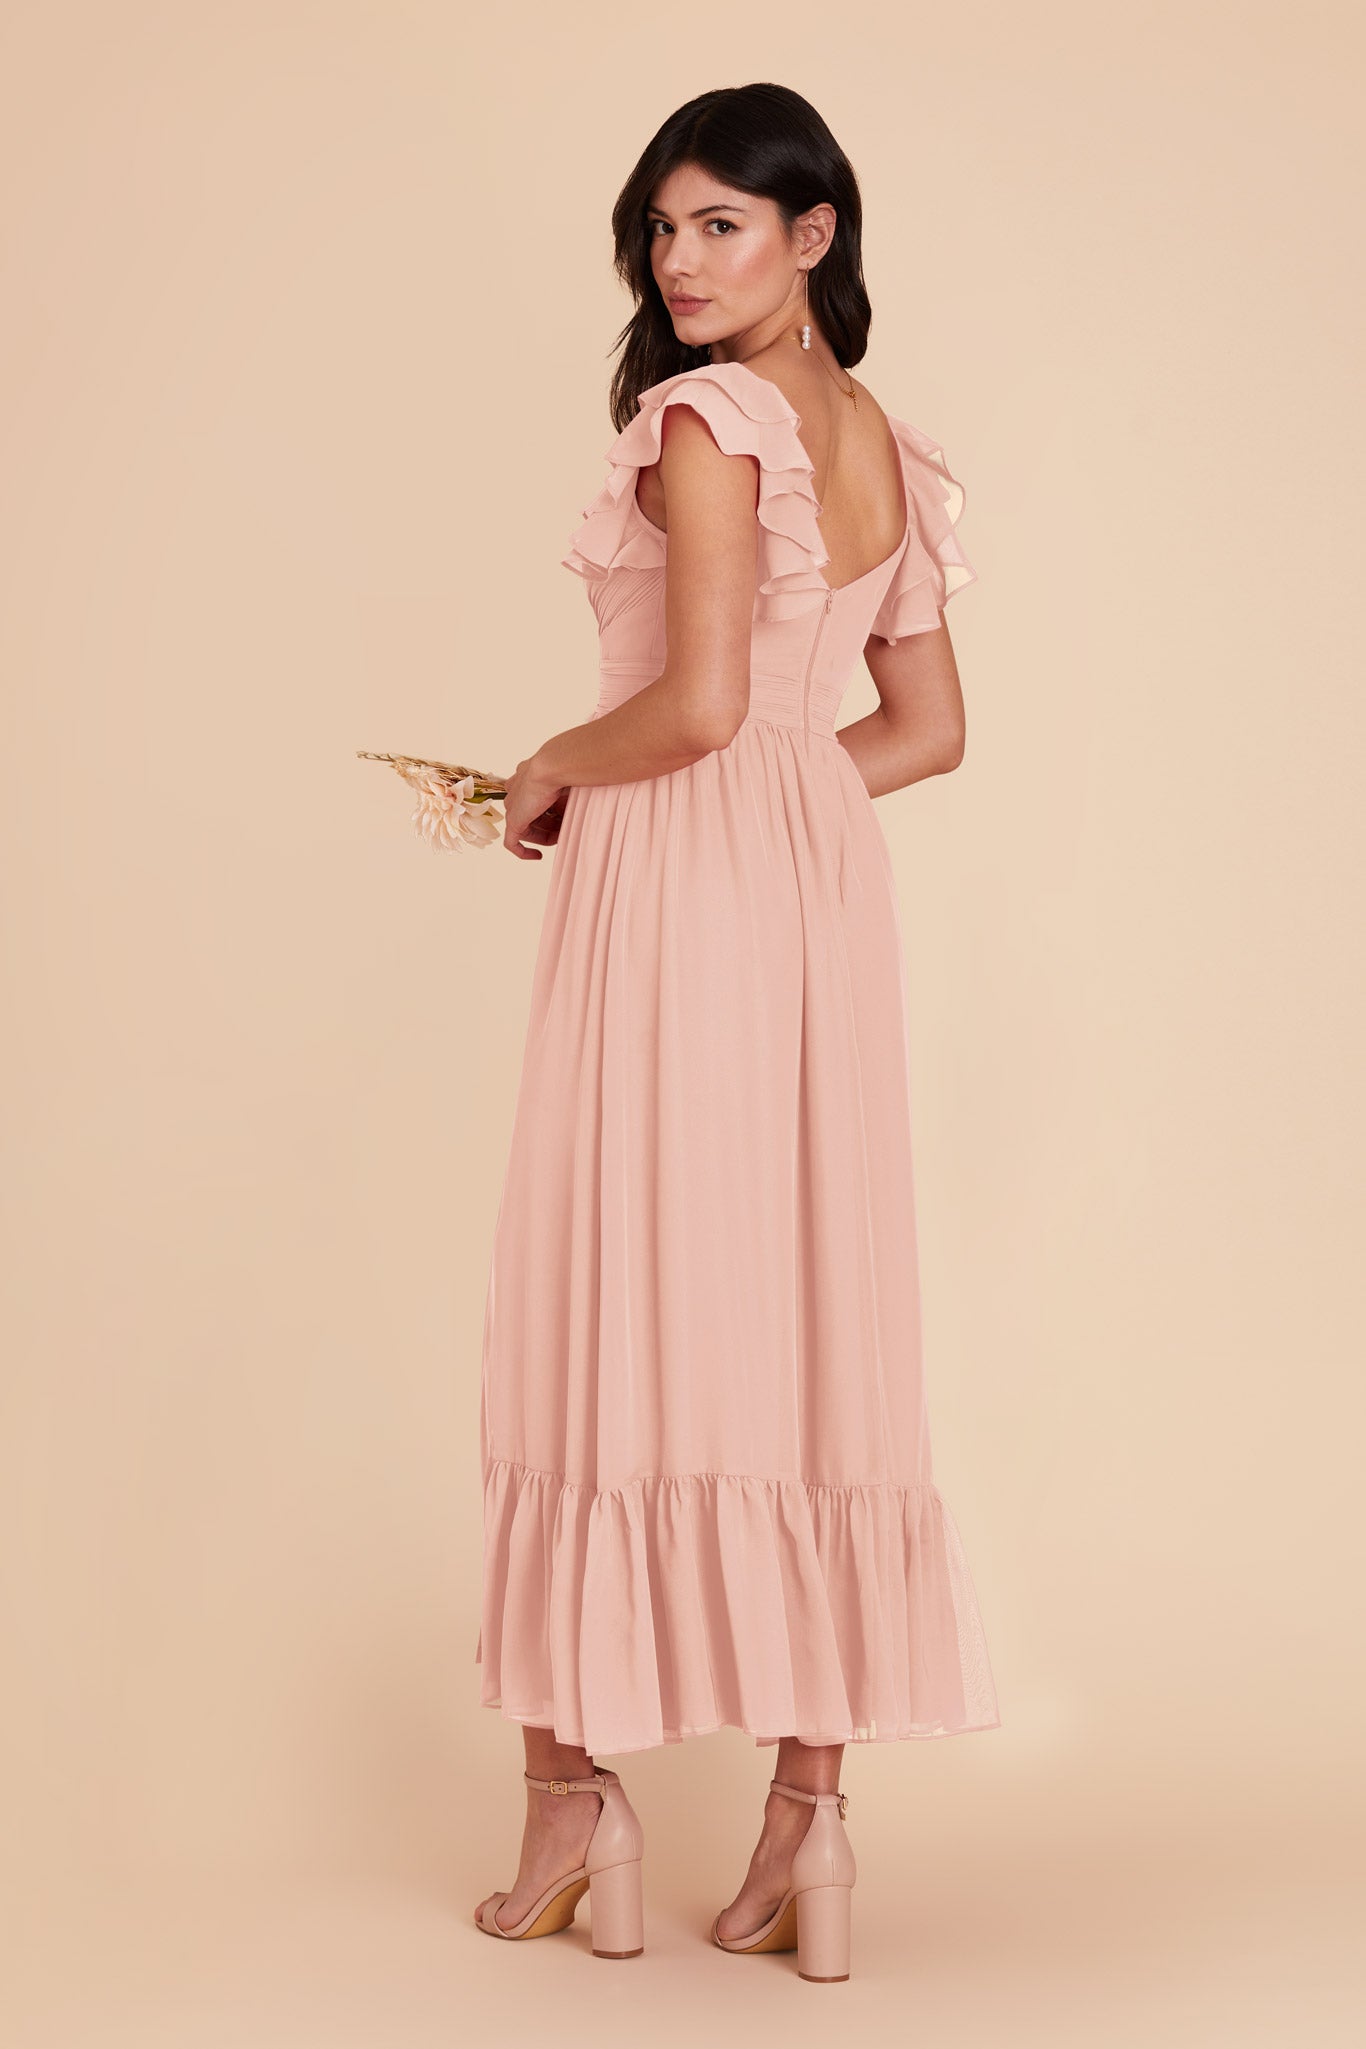 Blush Pink Michelle Chiffon Dress by Birdy Grey